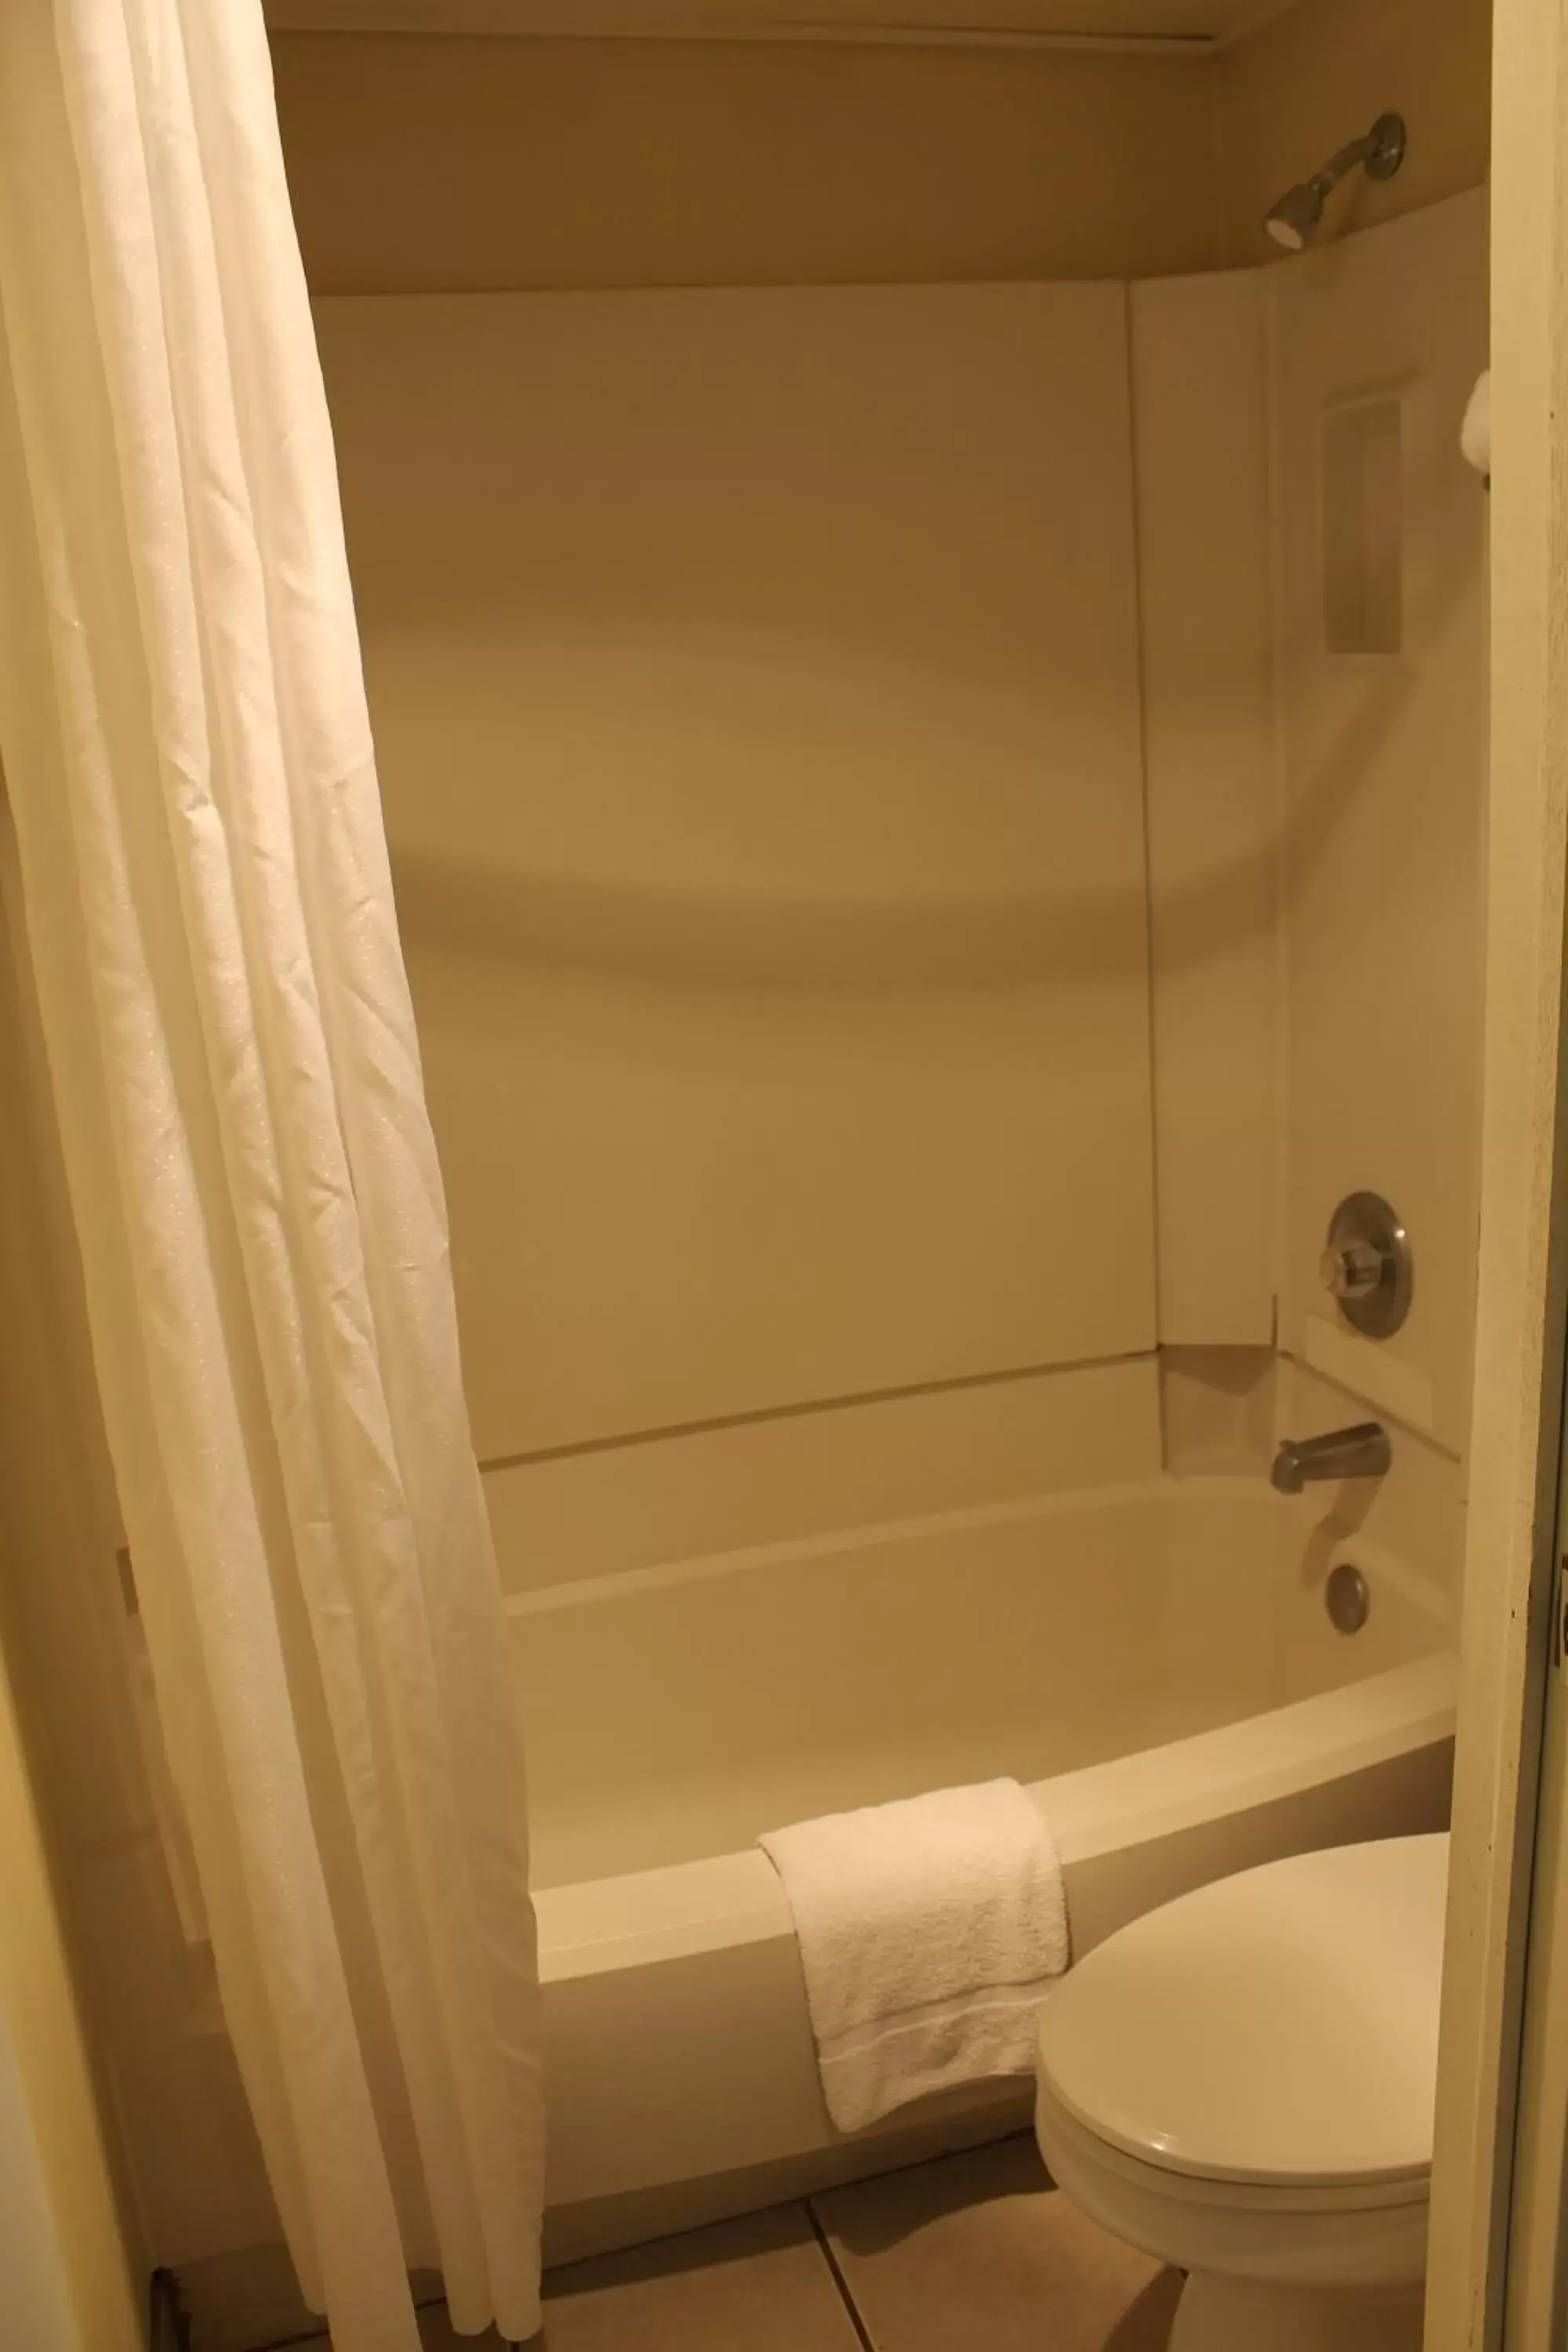 Bathroom in Wyatt Earp Hotel